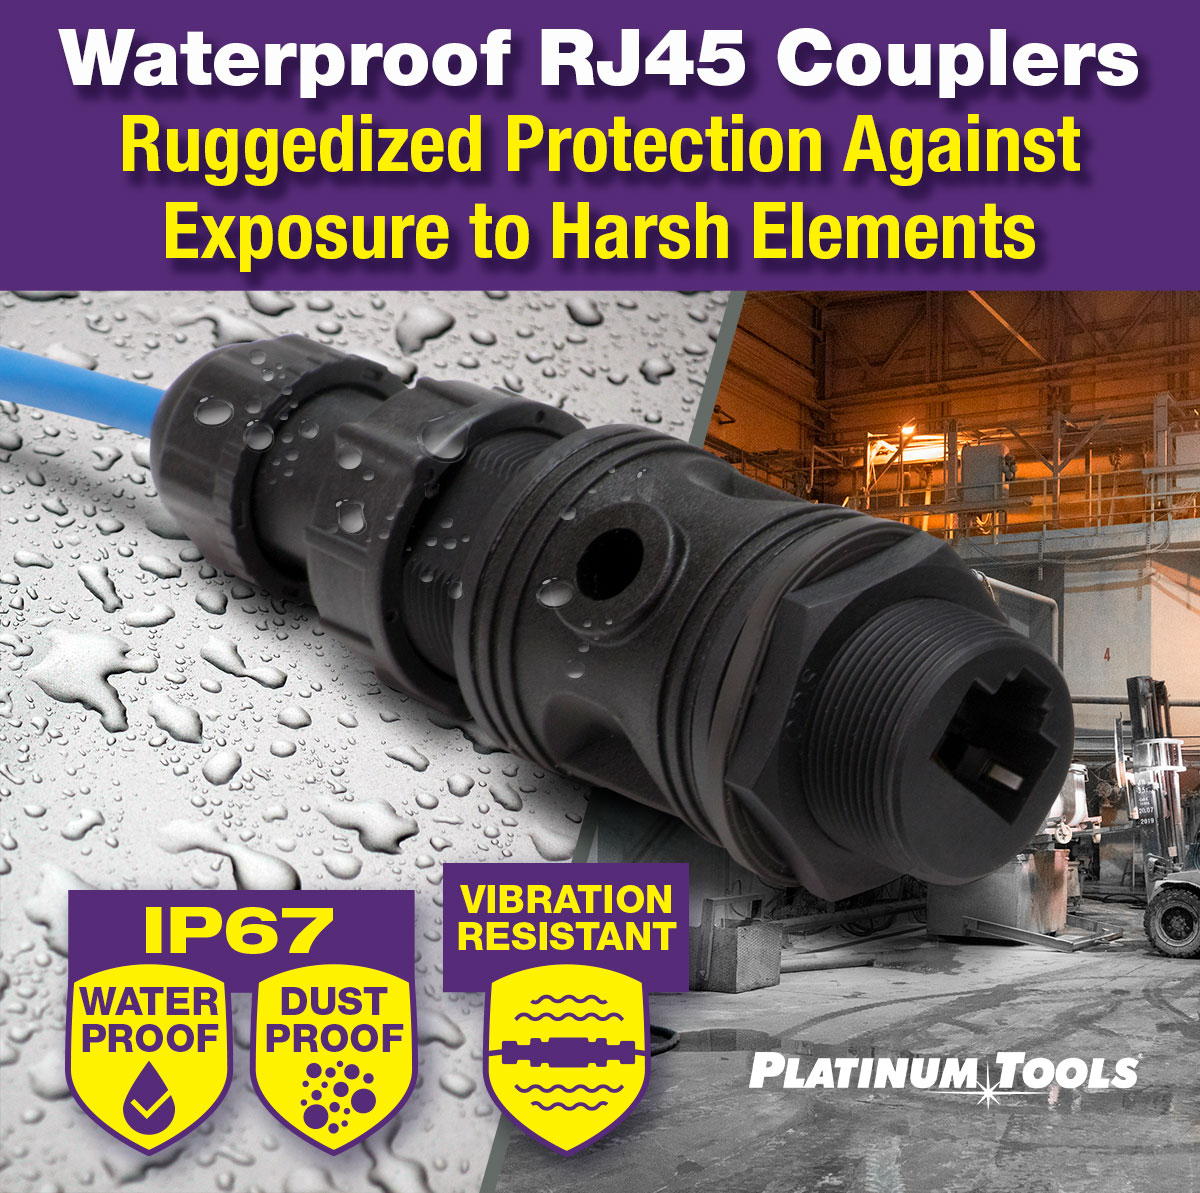 Waterproof RJ45 Couplers